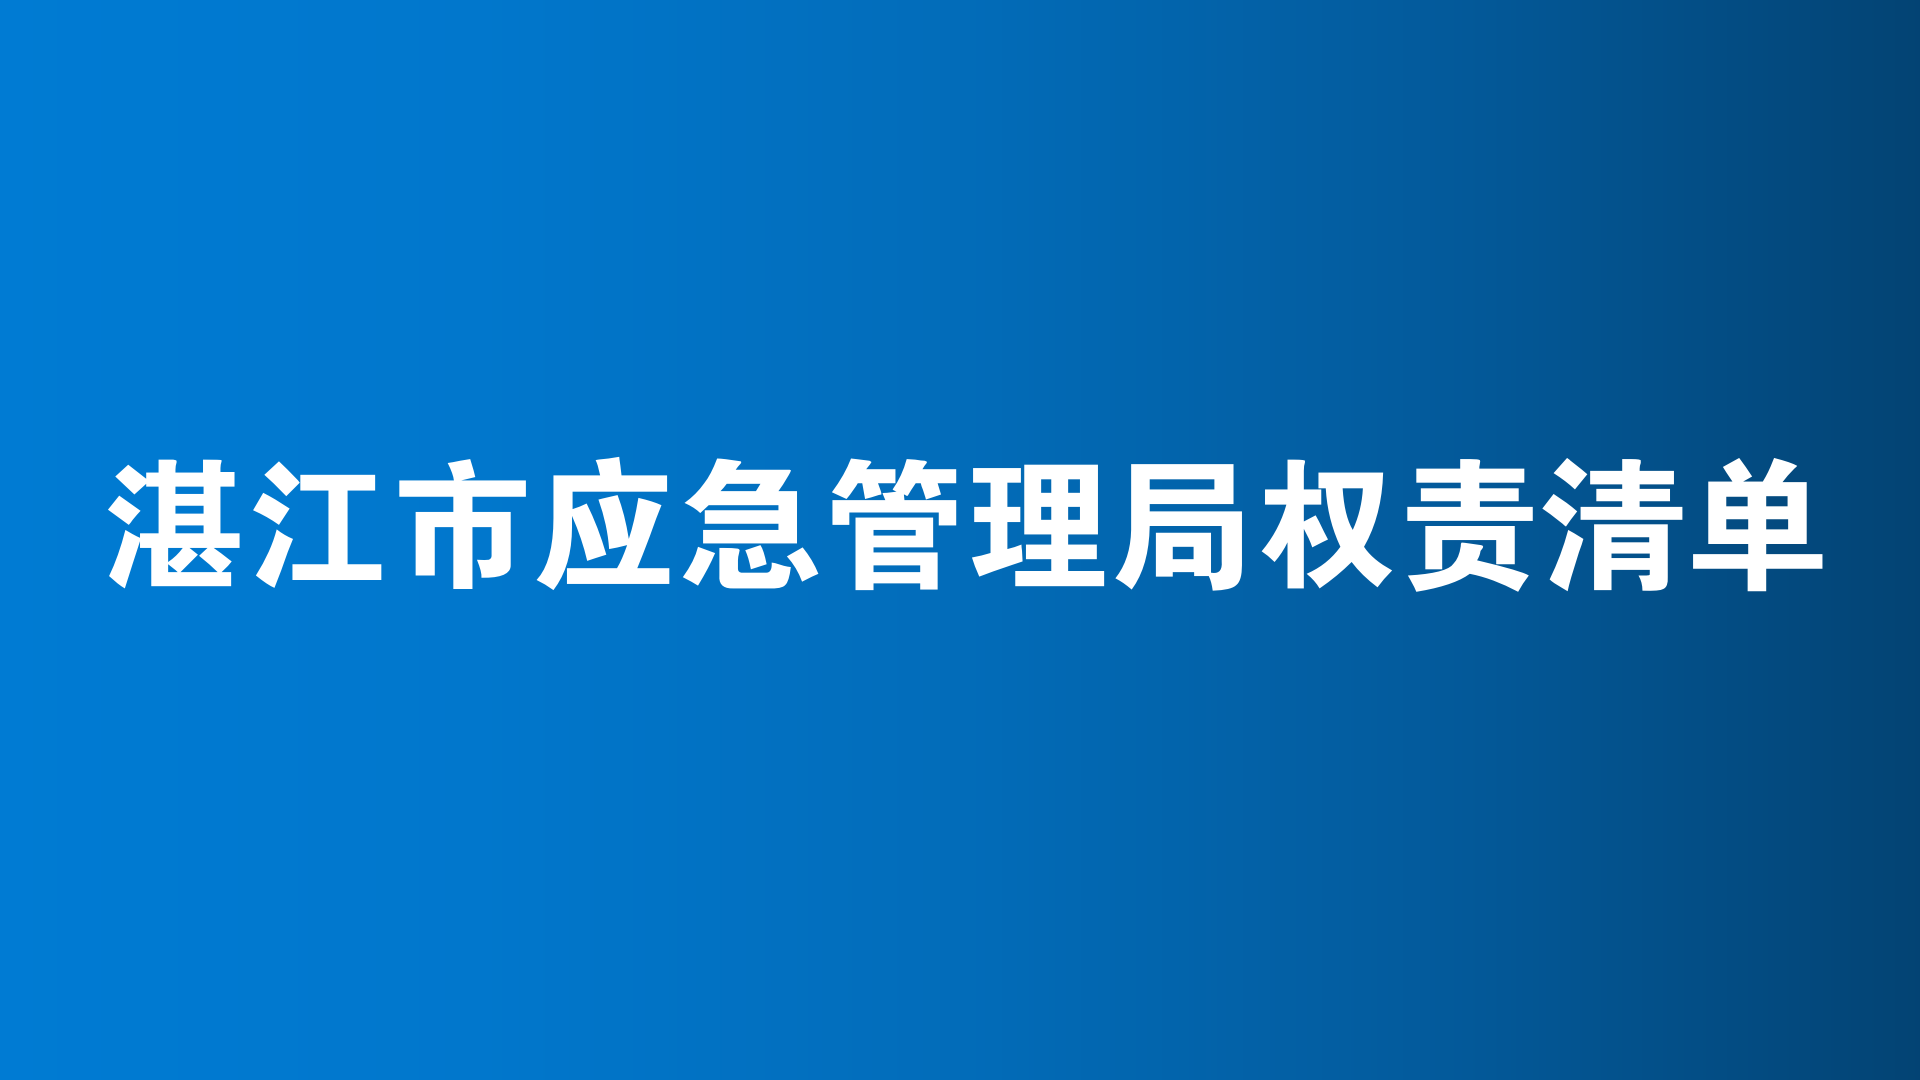 湛江市应急管理局权责清单